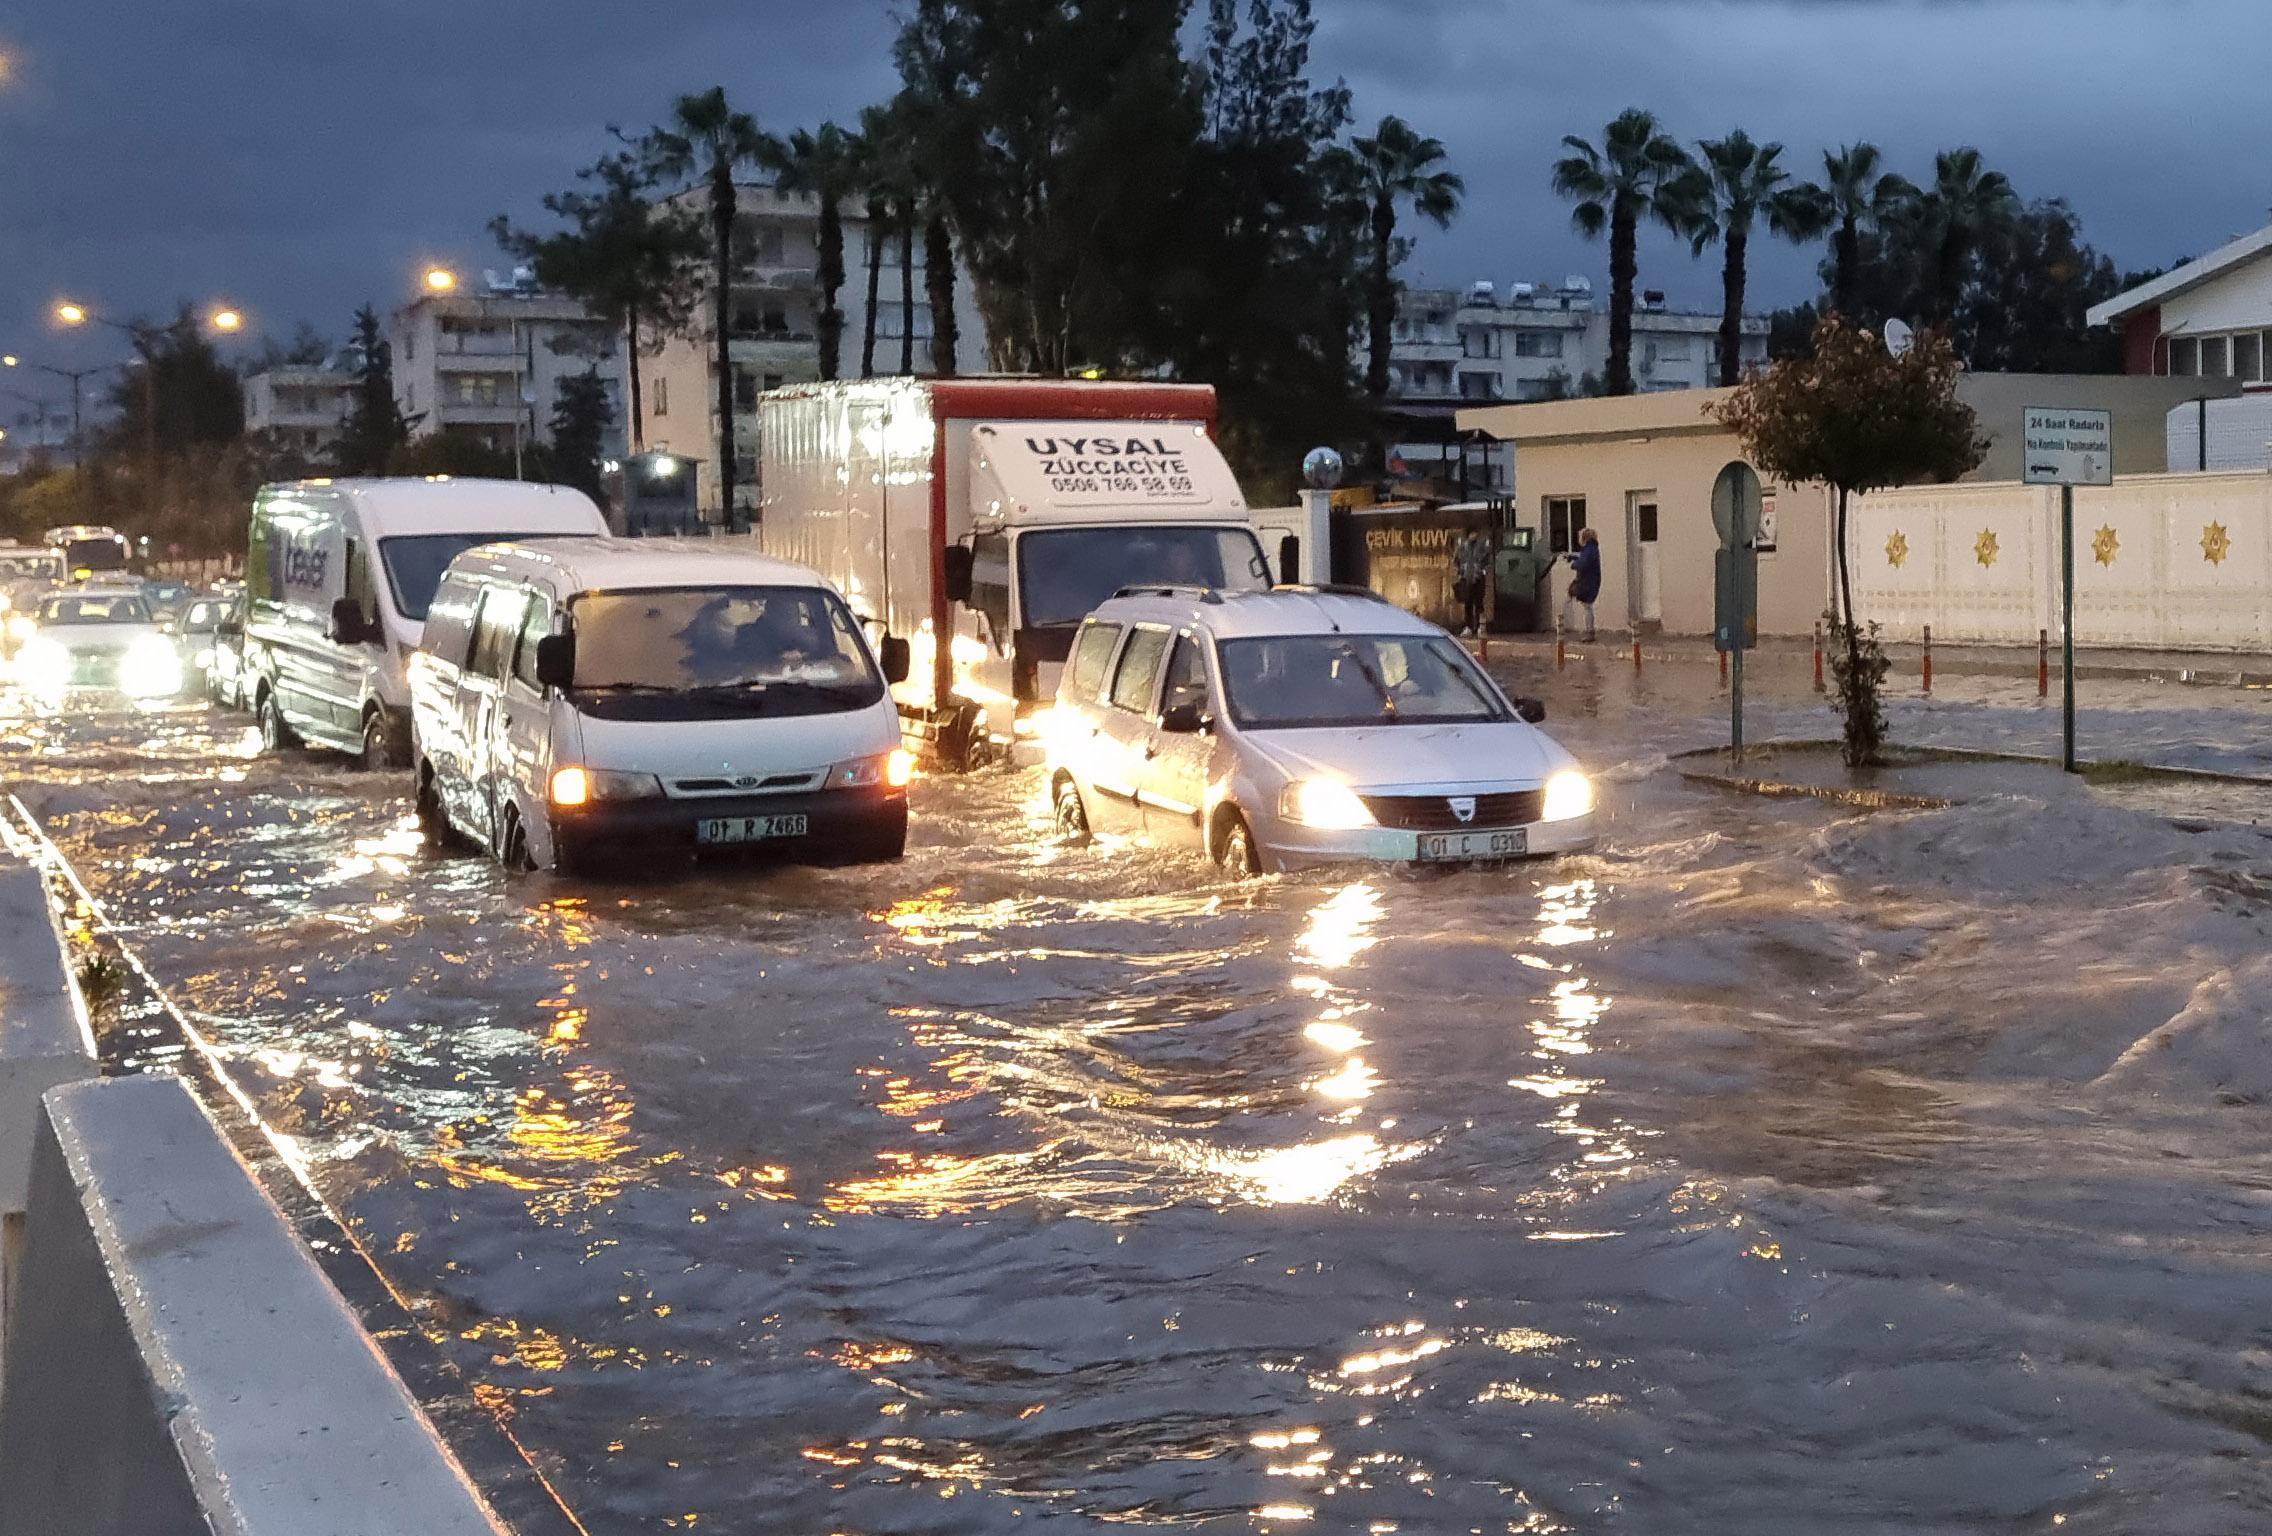 Adanada sağanak yağış hayatı etkiledi, minibüs su dolu çukura düştü